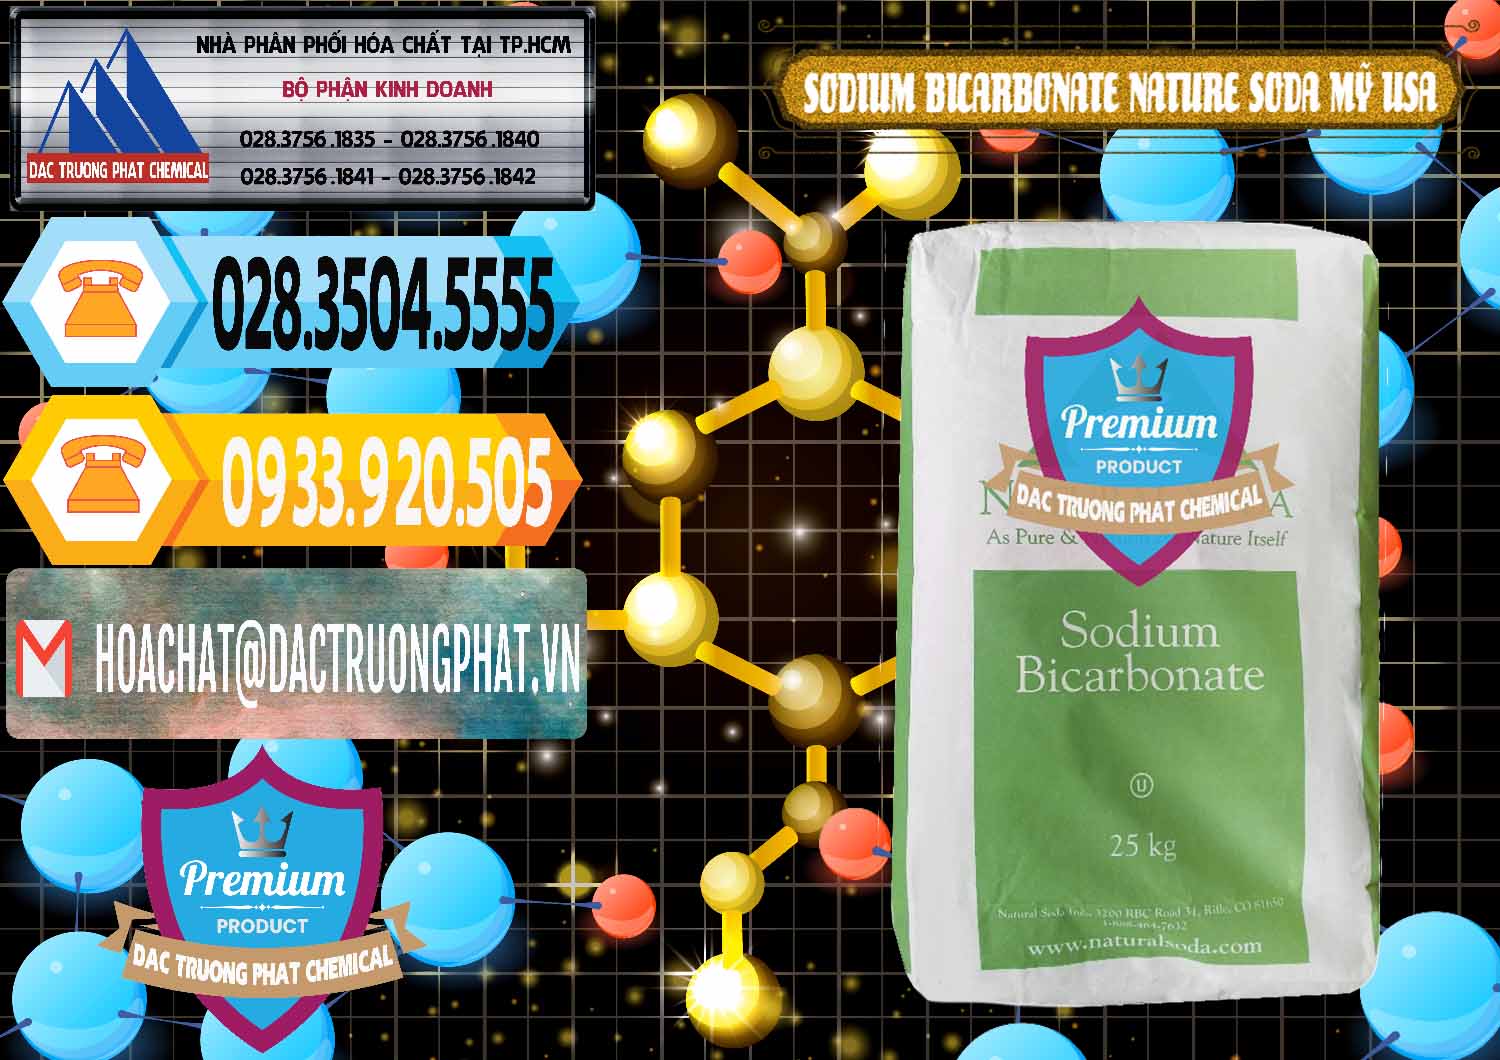 Nơi cung ứng - bán Sodium Bicarbonate – Bicar NaHCO3 Food Grade Nature Soda Mỹ USA - 0256 - Nơi chuyên bán & cung cấp hóa chất tại TP.HCM - hoachattayrua.net